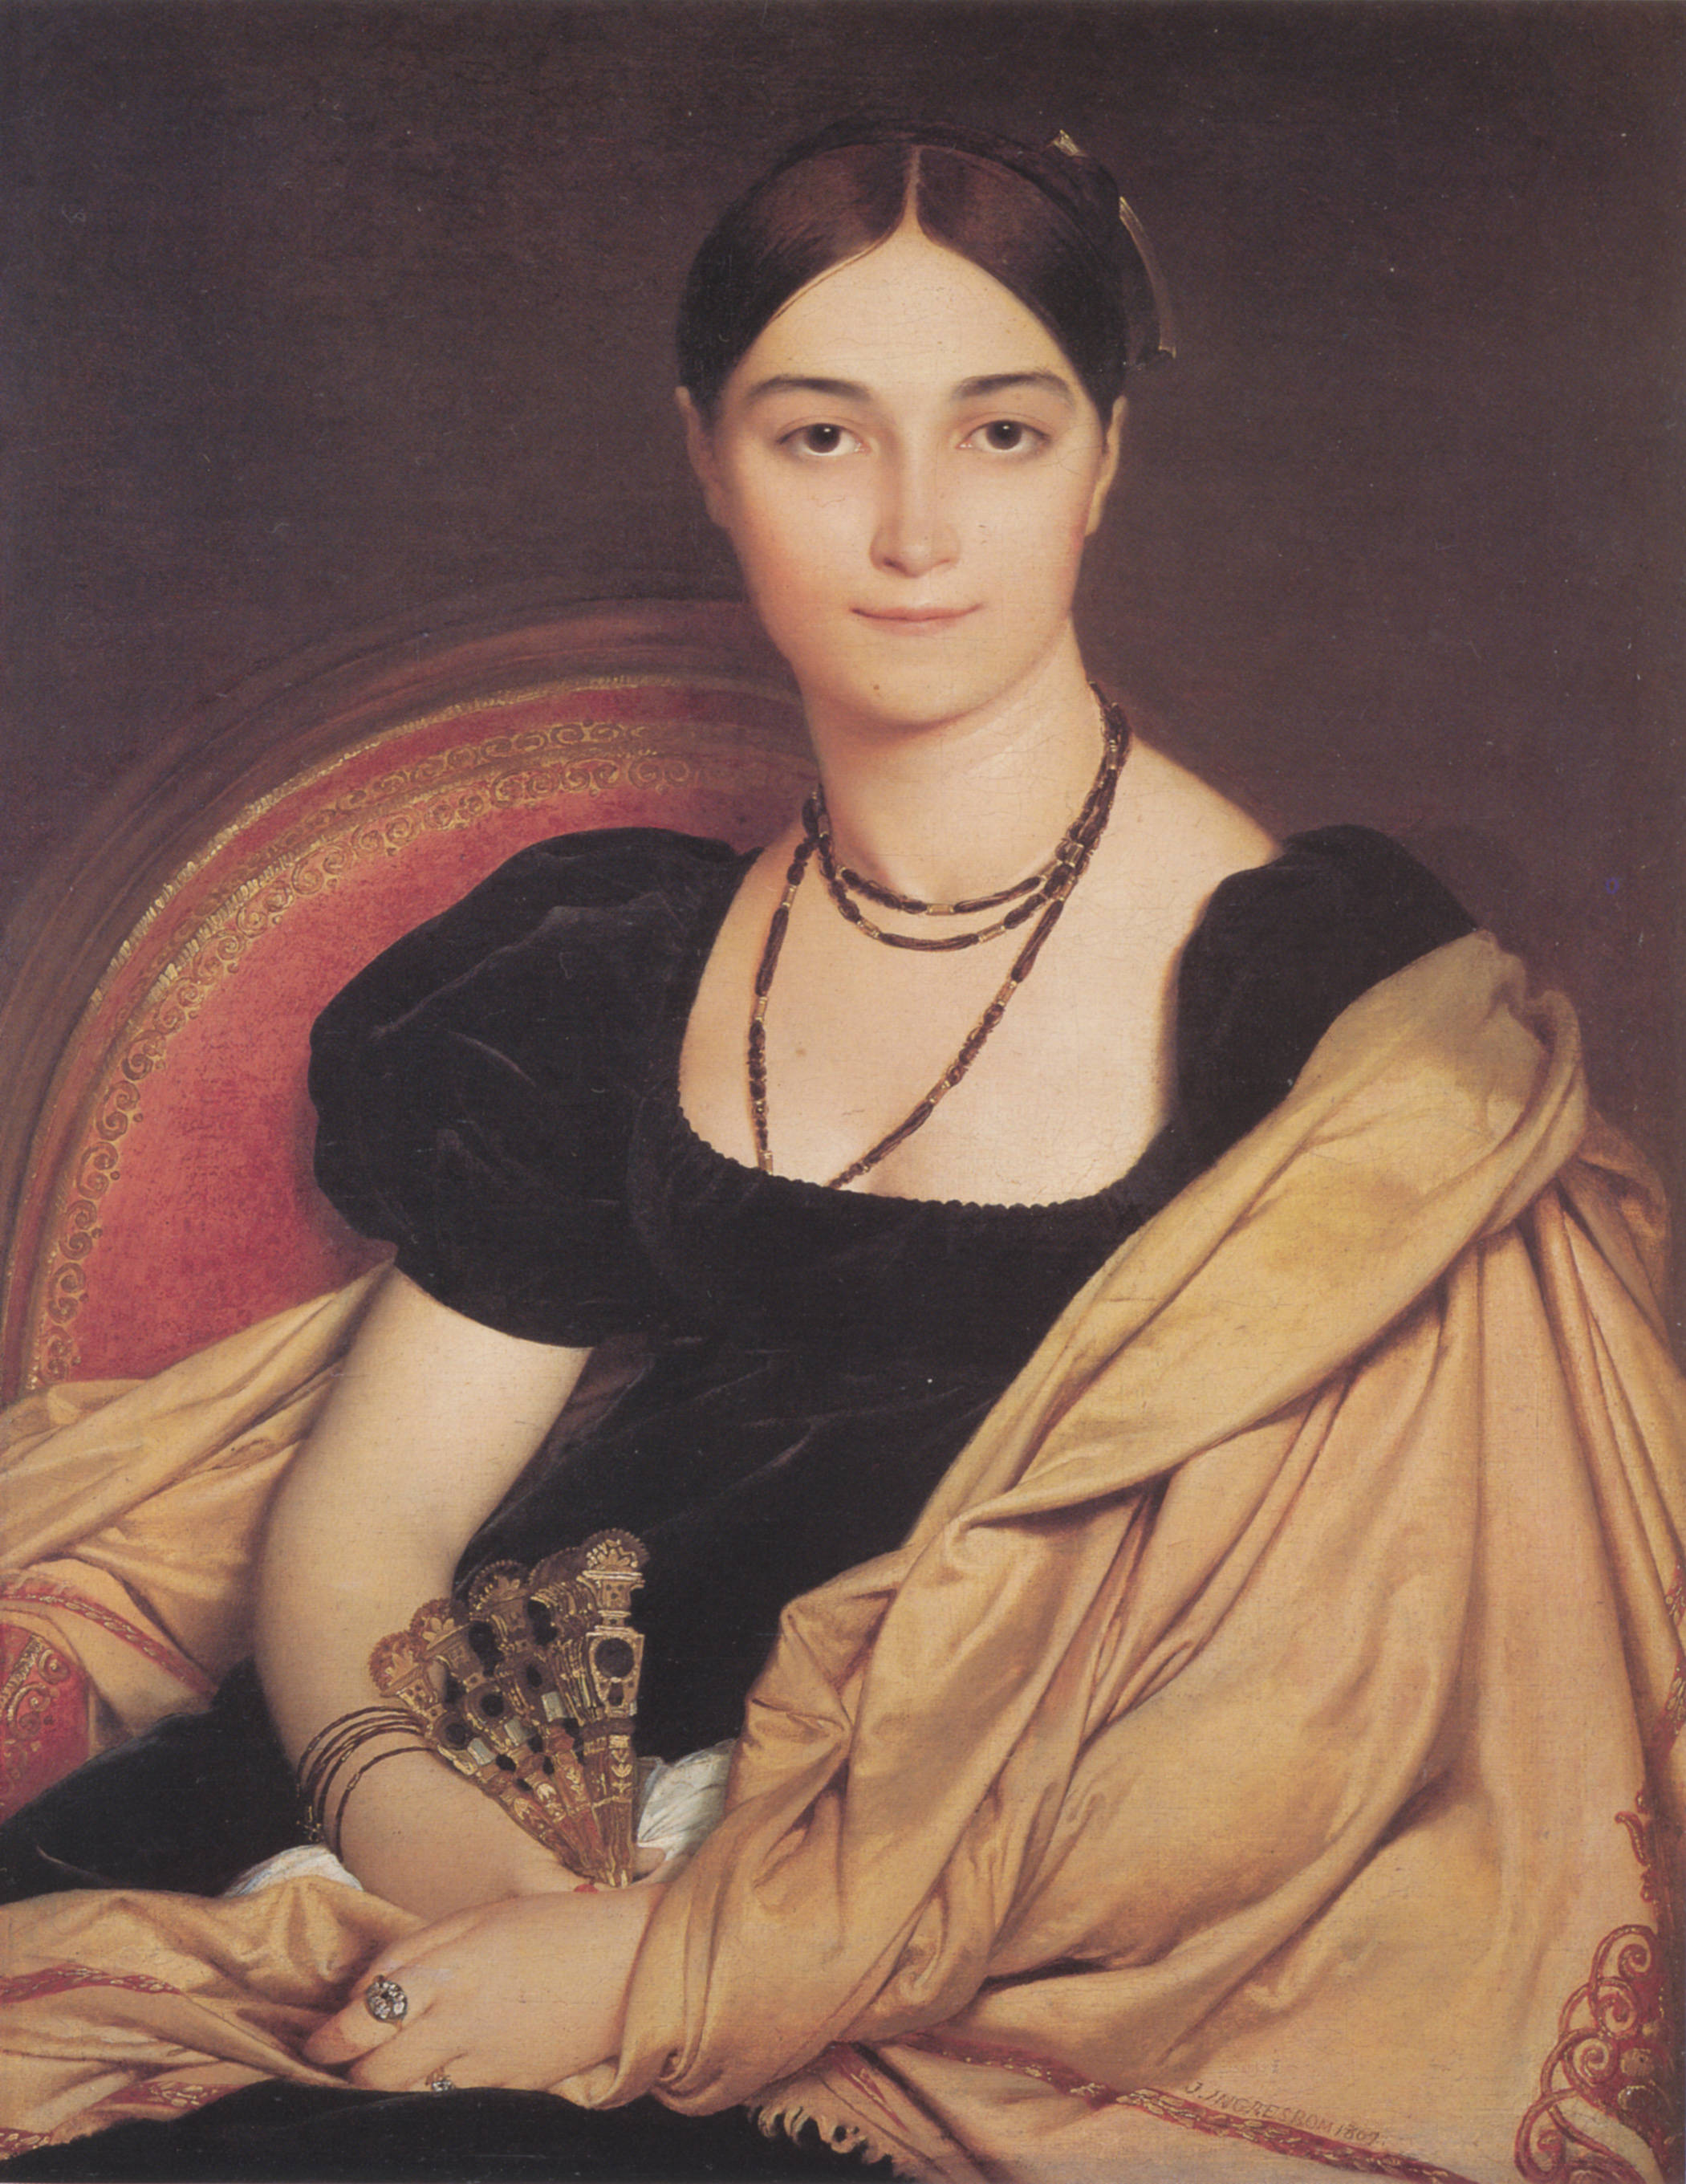 名画里的女性肖像油画欣赏安格尔克拉姆斯柯伊达维特三位大佬的油画